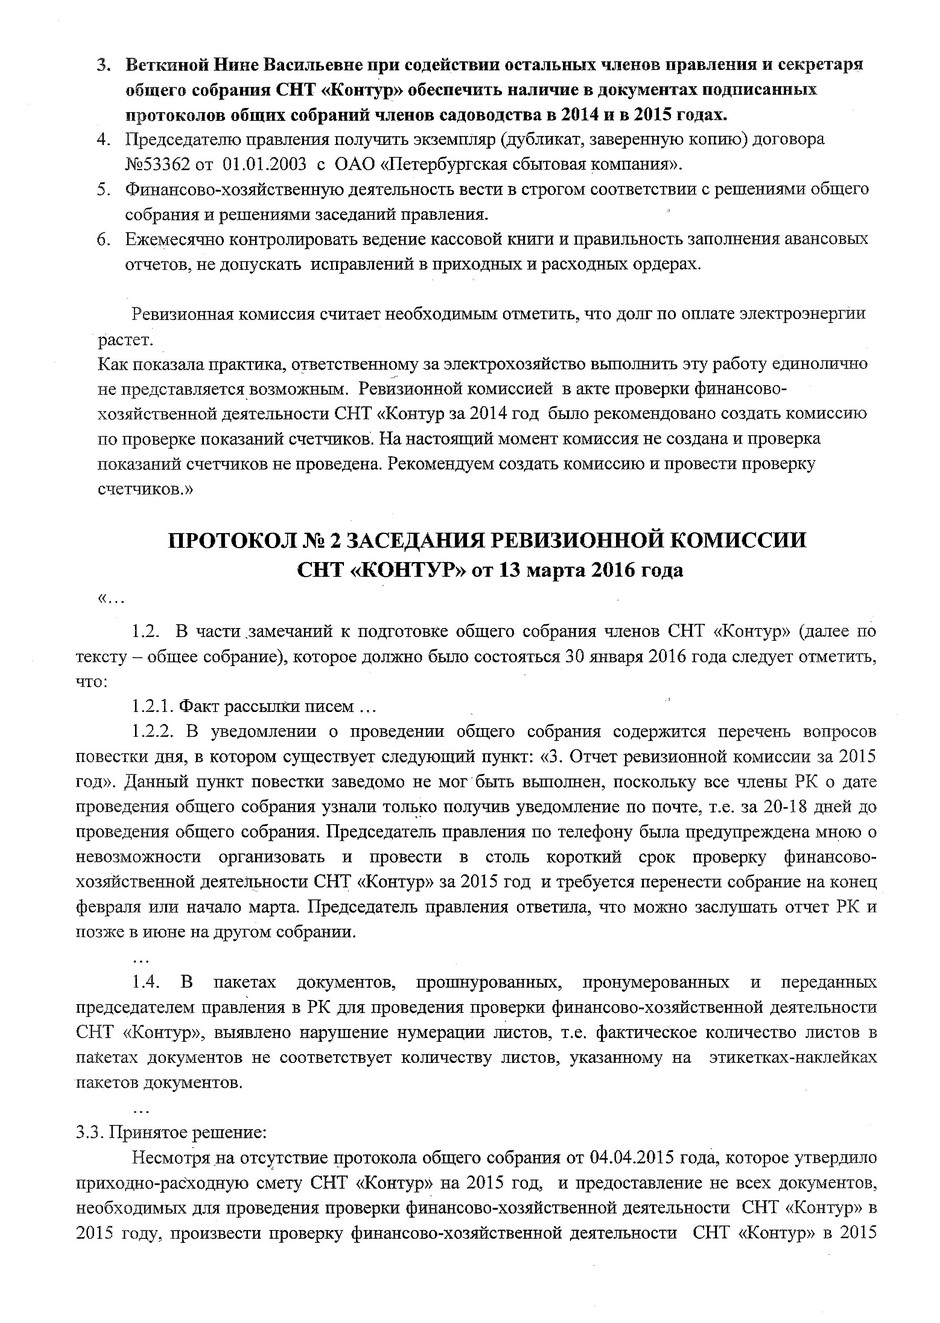 Обращение ревизионной комиссии к садоводам СНТ "Контур"